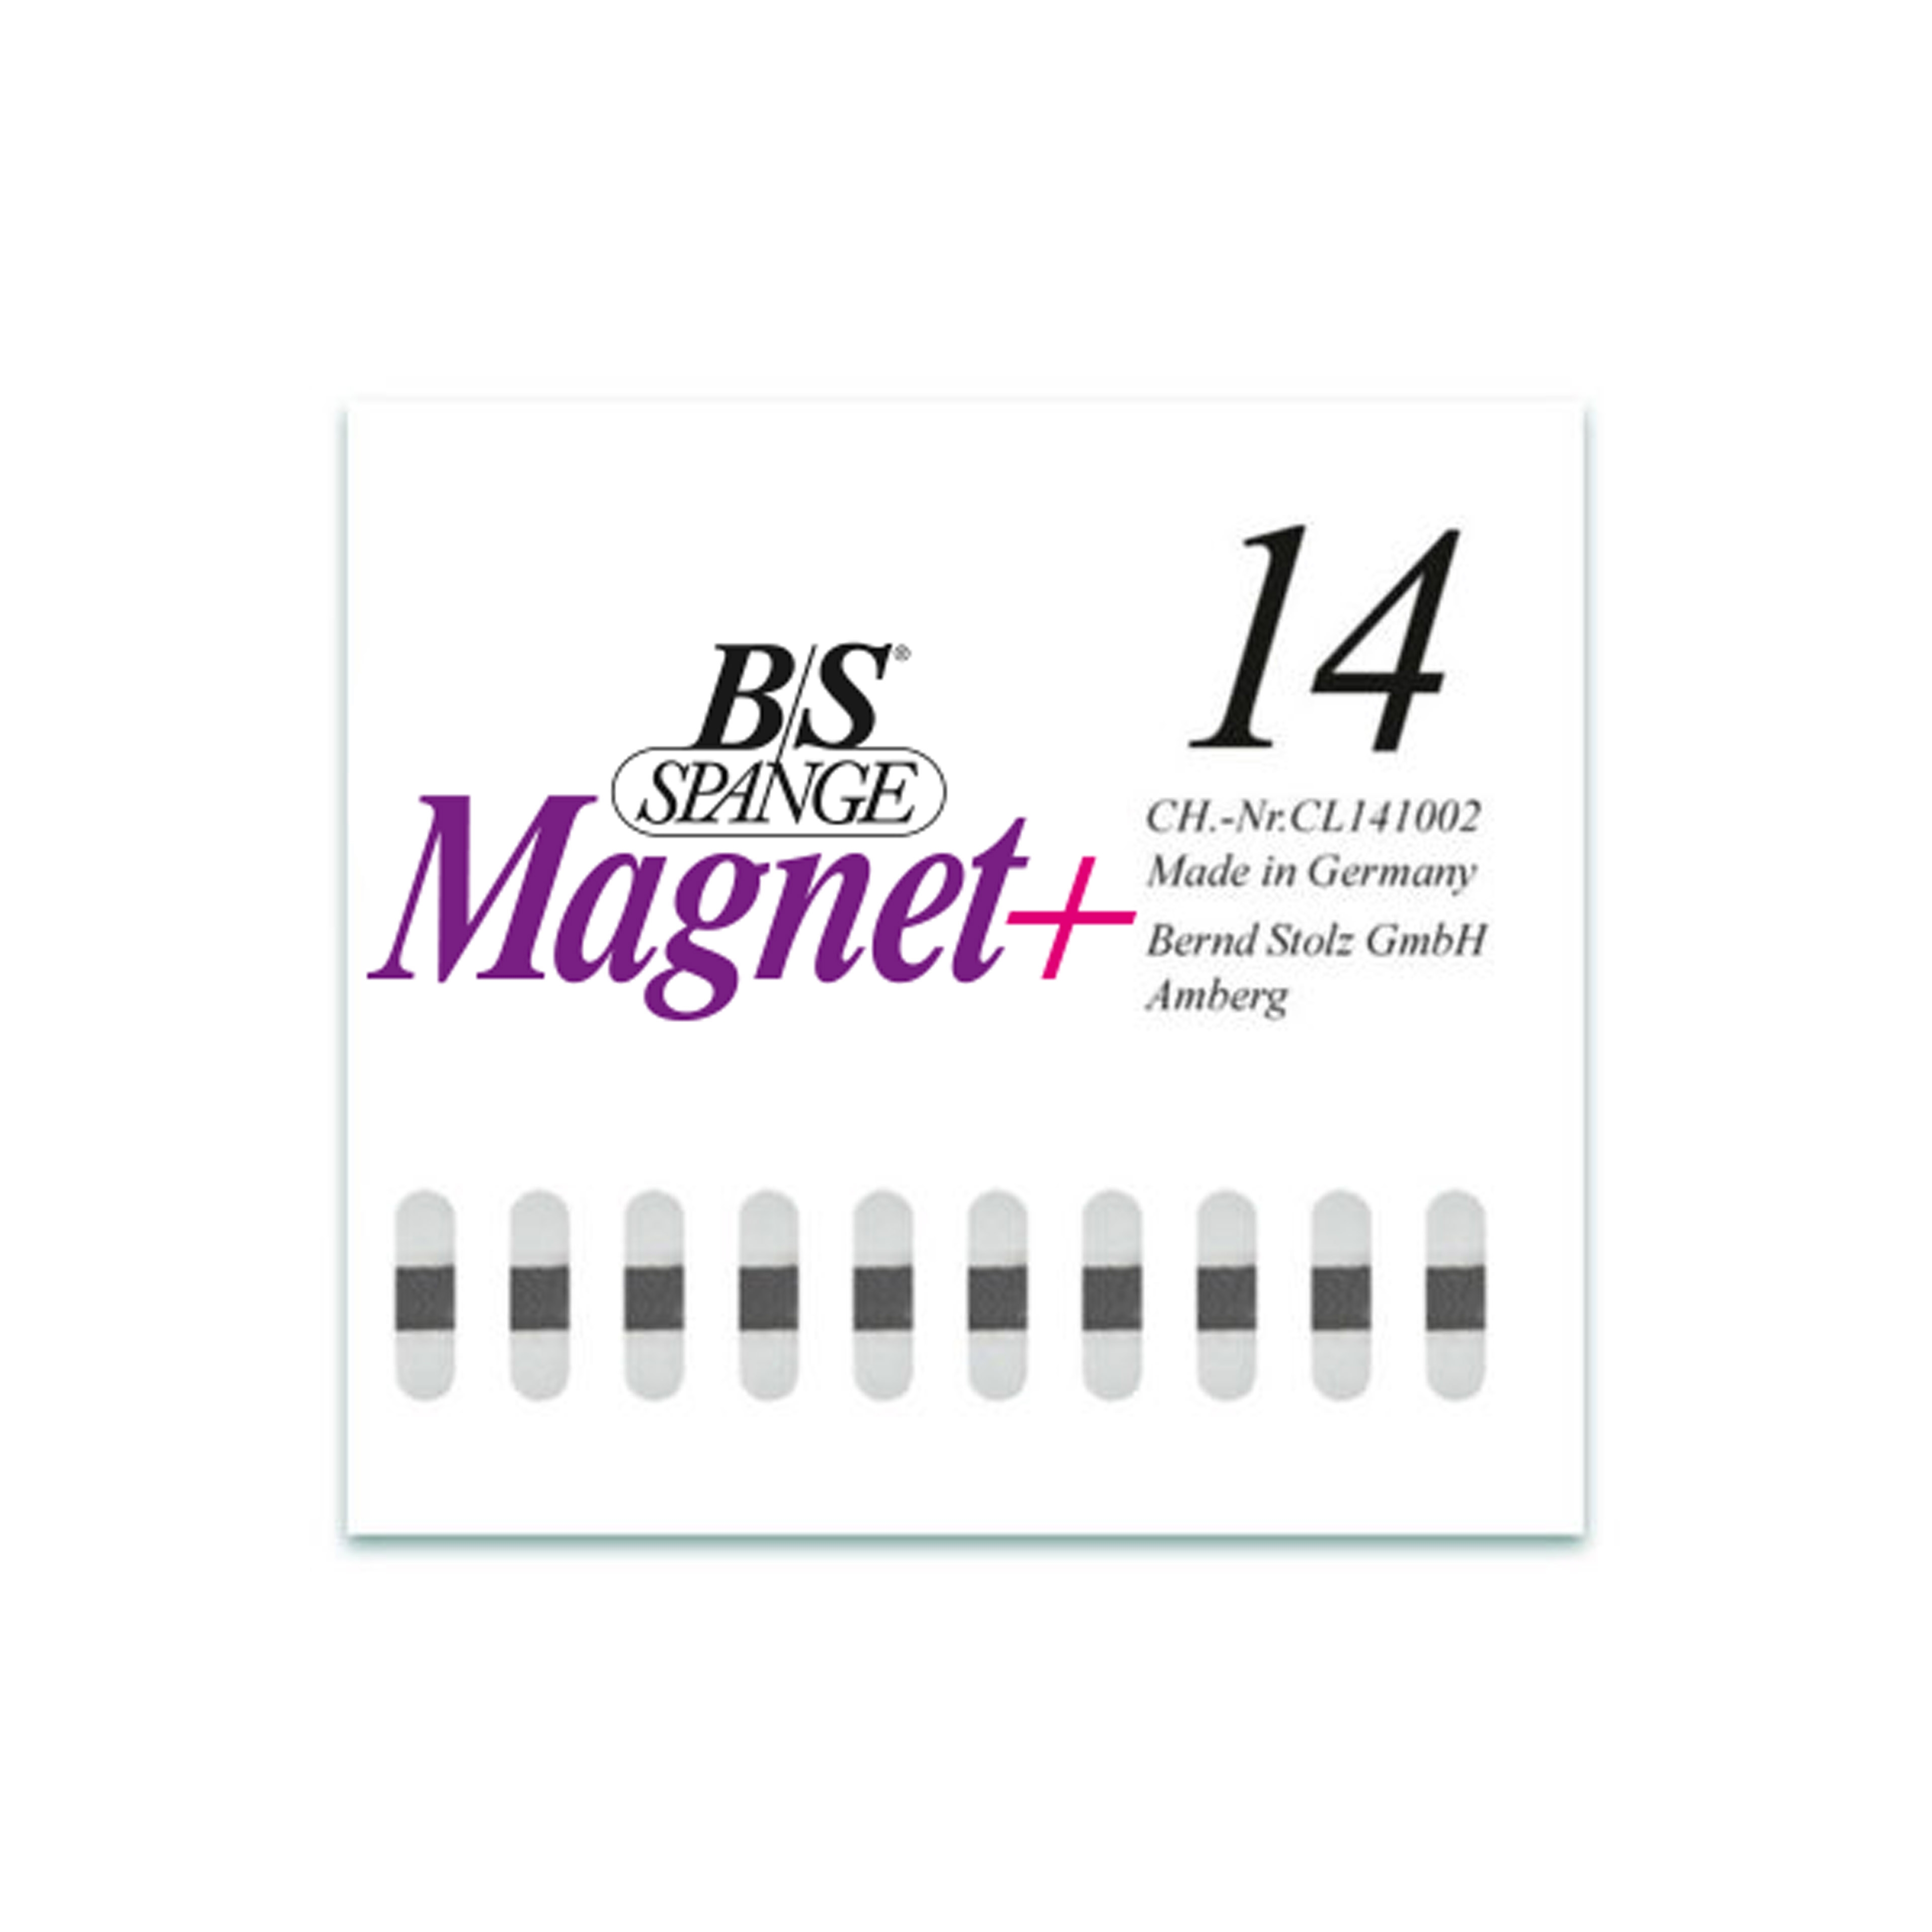 B/S Spange Magnet+ | Länge 14 Breite 4 mm 10 Stück